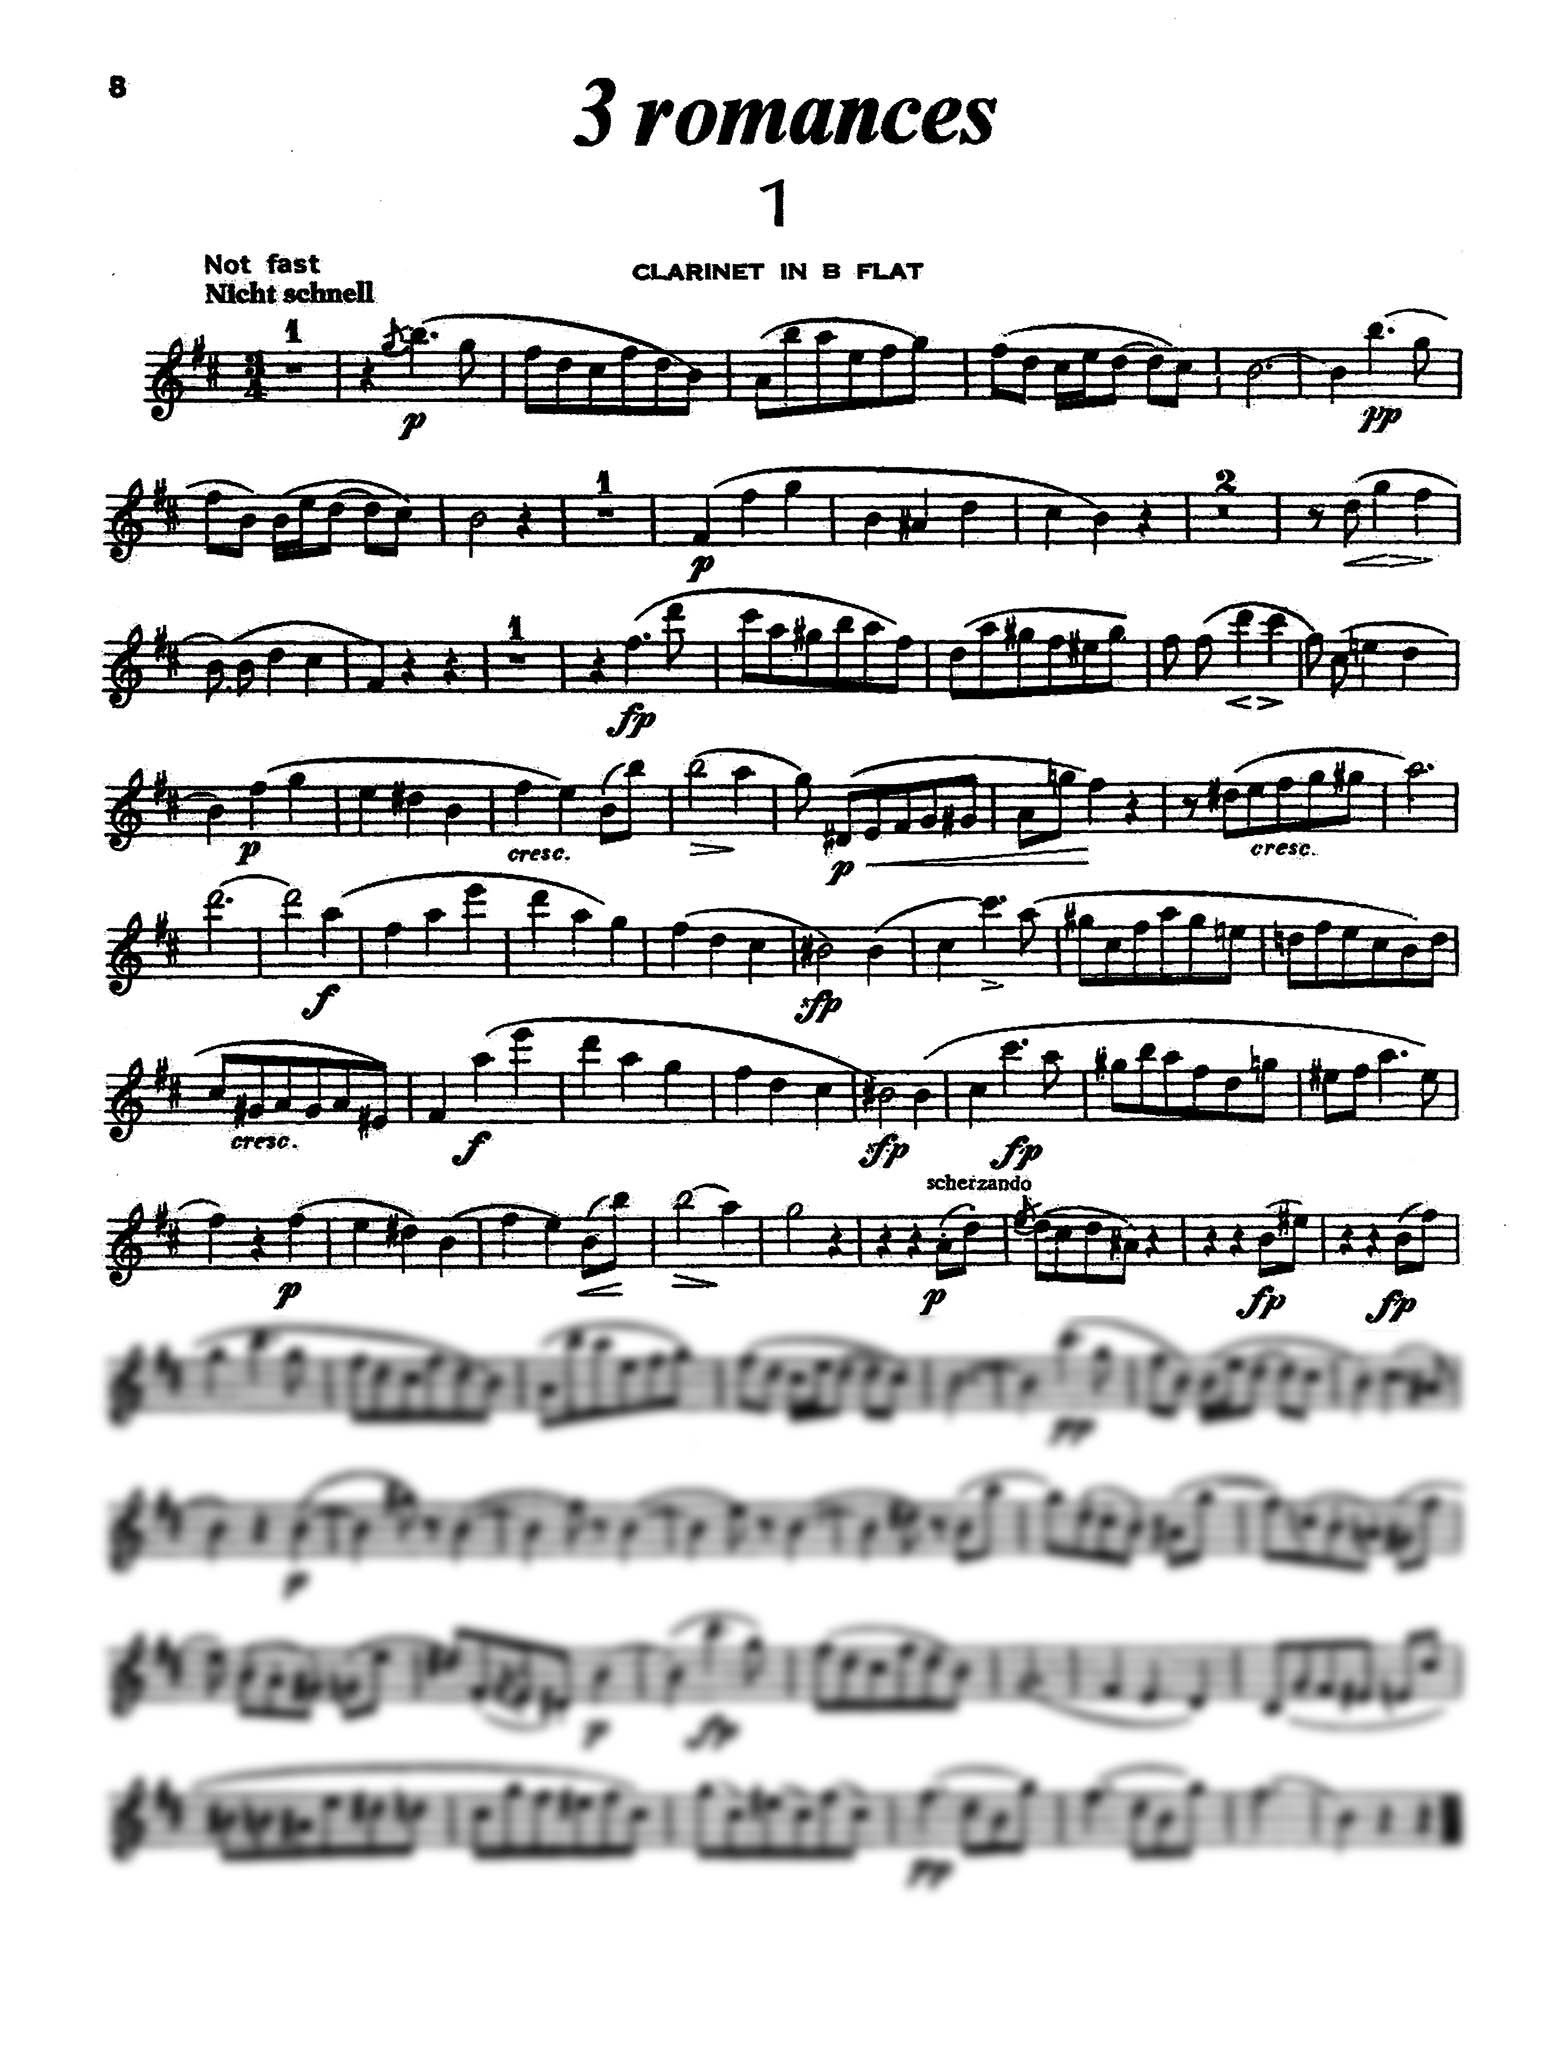 3 Romanzen, Op. 94 B-flat Clarinet part